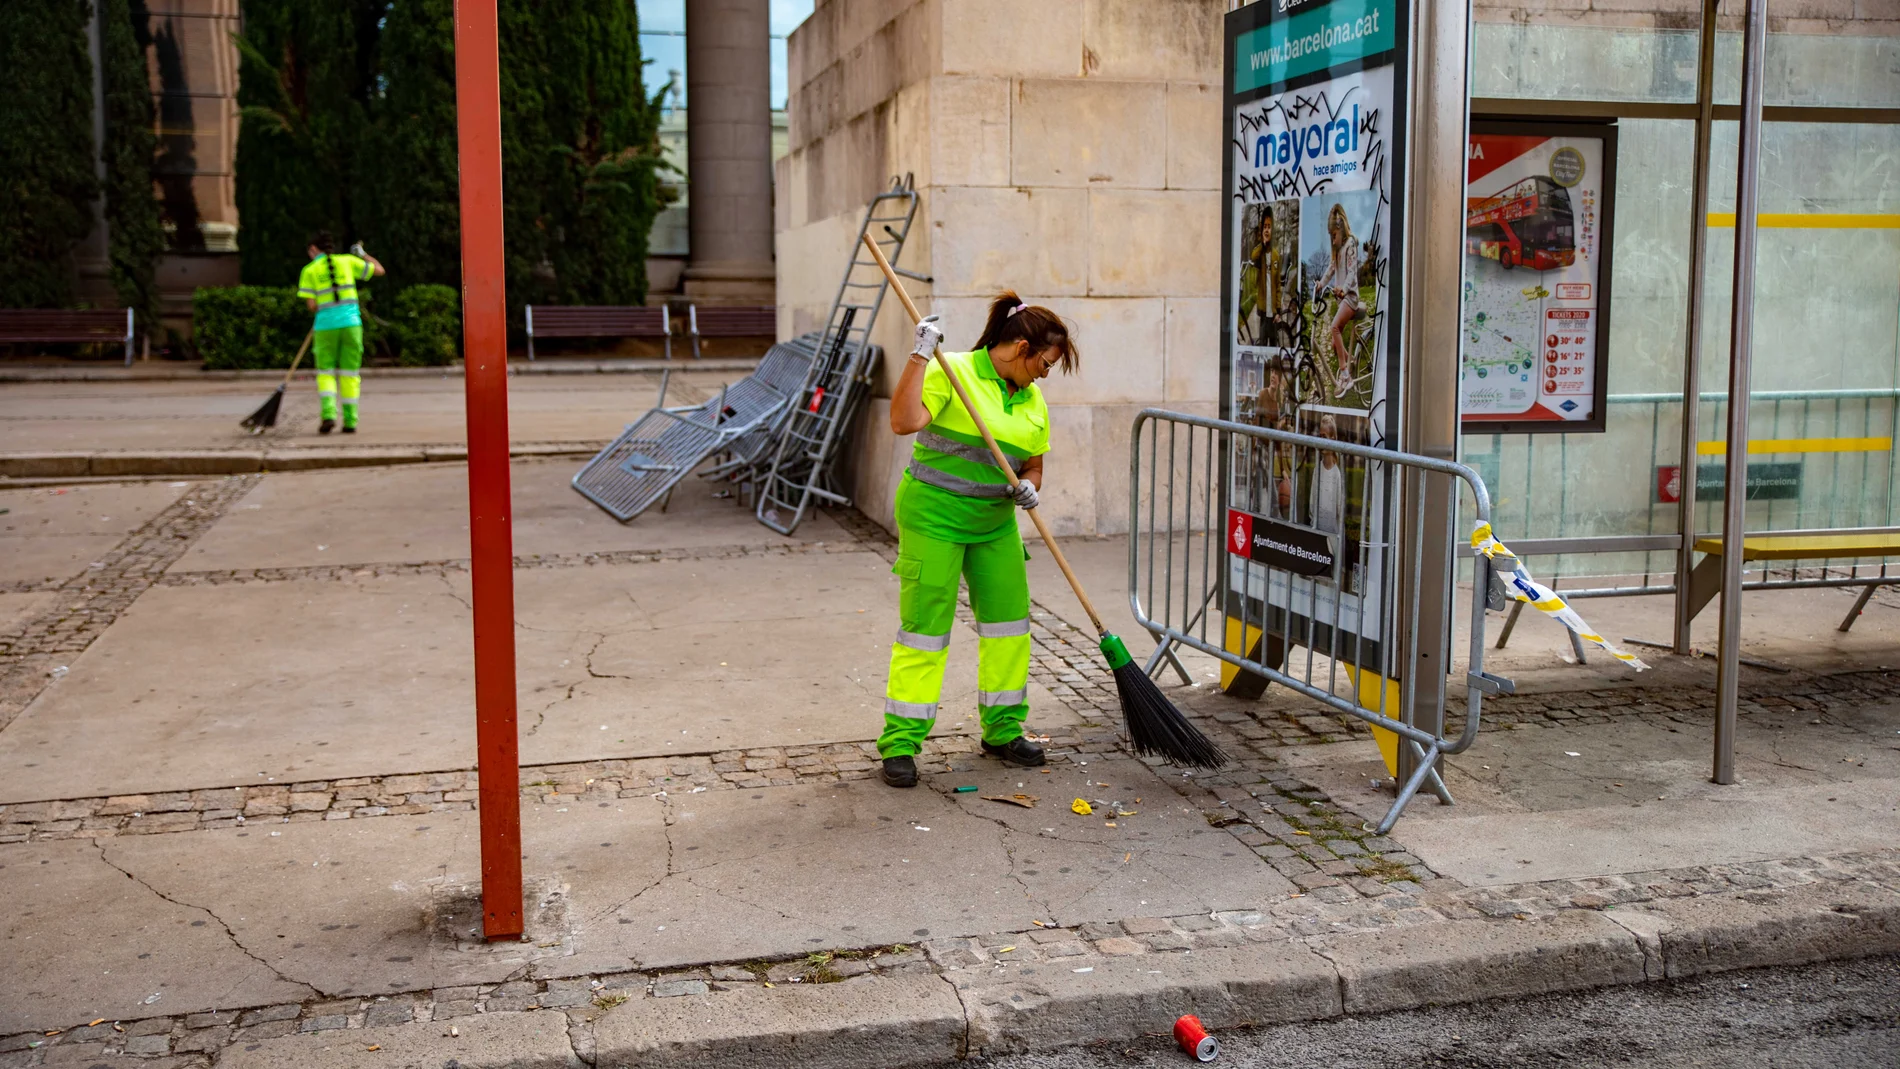 Operarios municipales limpian los desperfectos causados por los altercados en las Fiestas de la Mercé. Kike Rincón / Europa Press